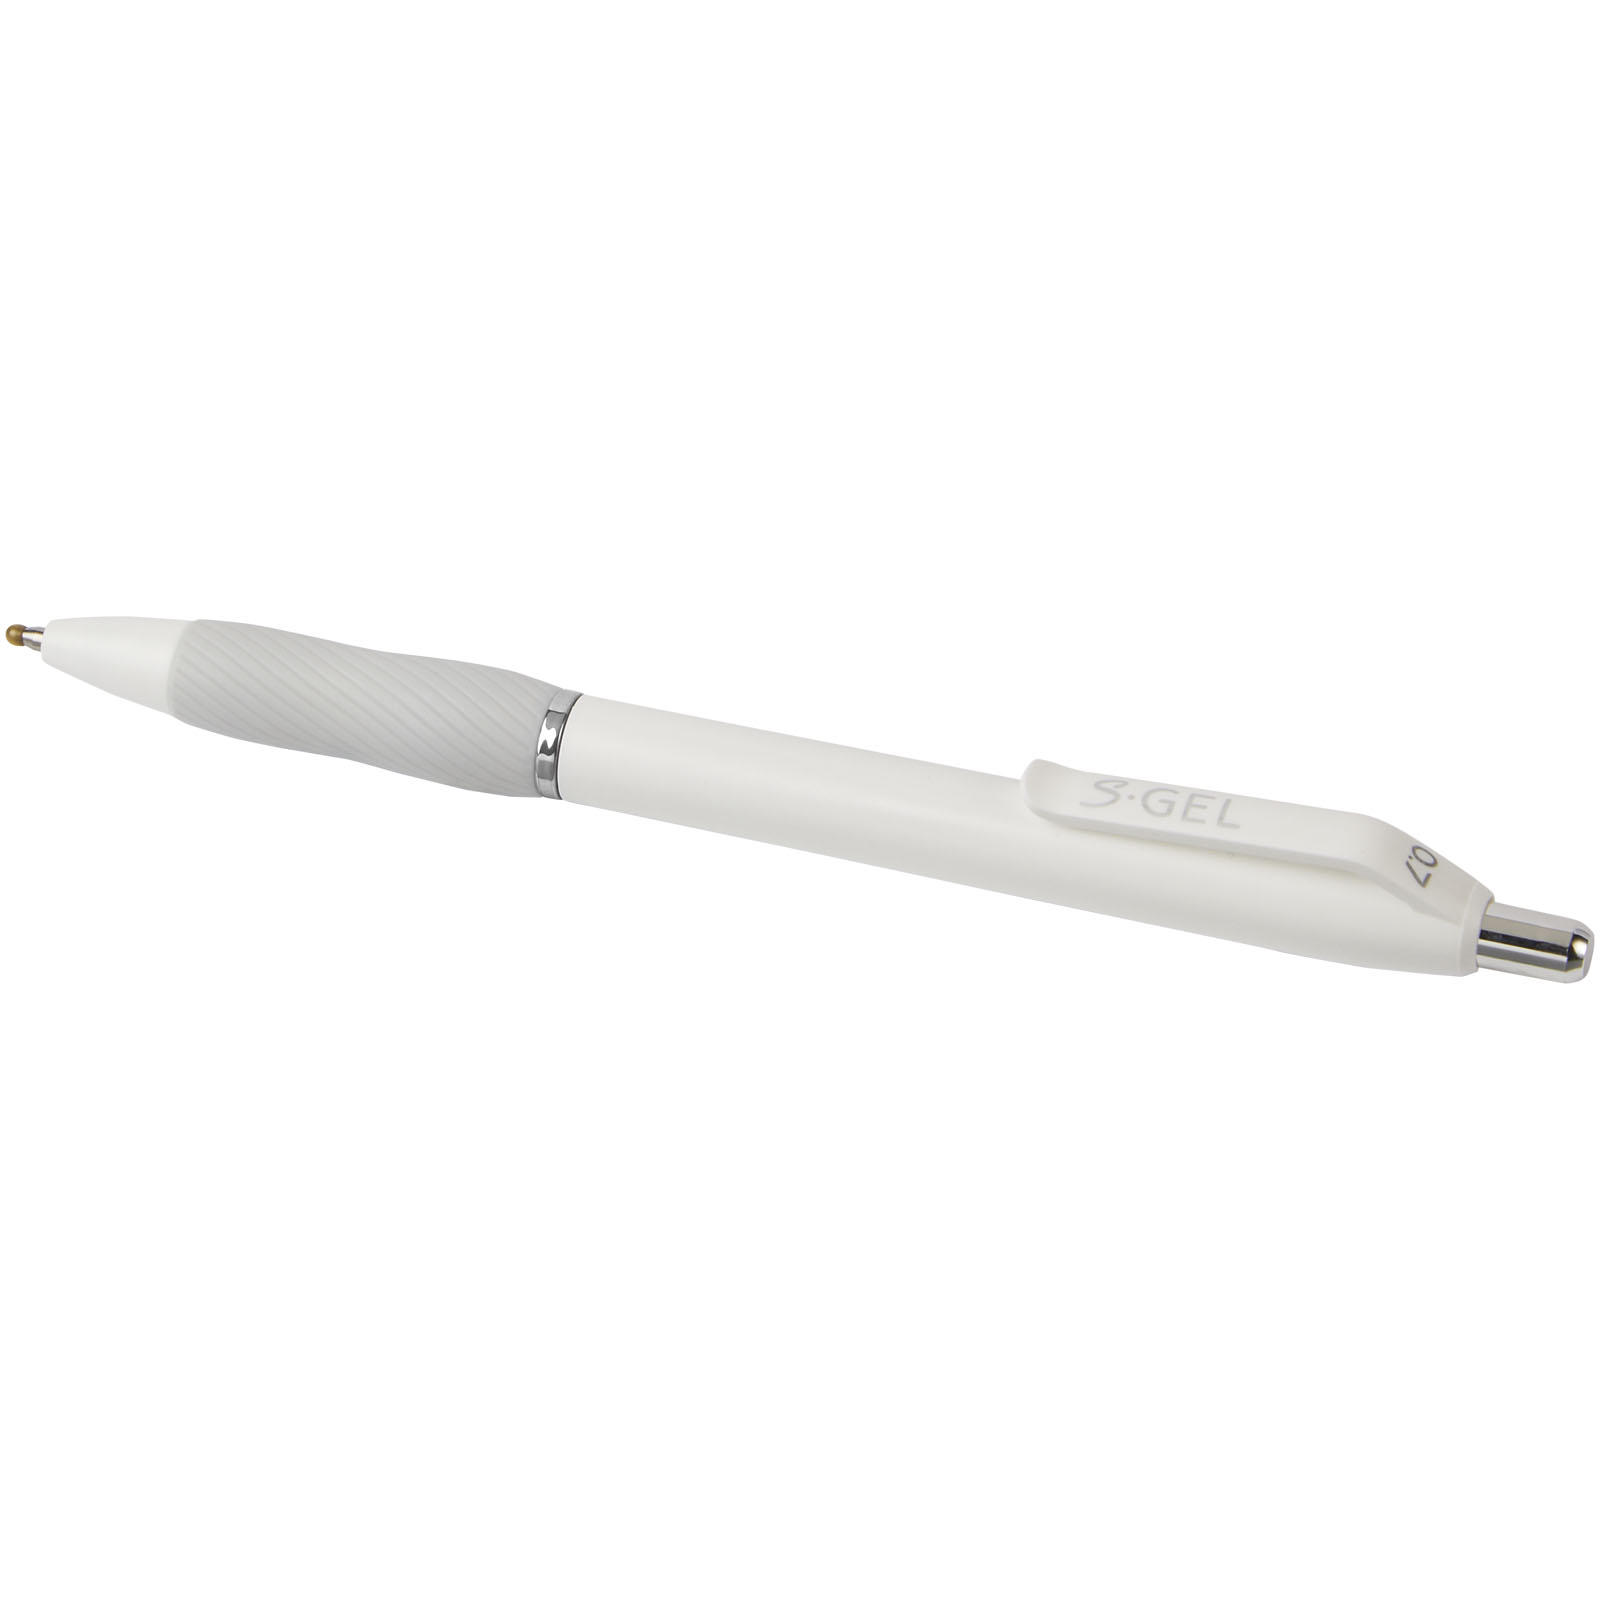 Advertising Ballpoint Pens - Sharpie® S-Gel ballpoint pen - 3